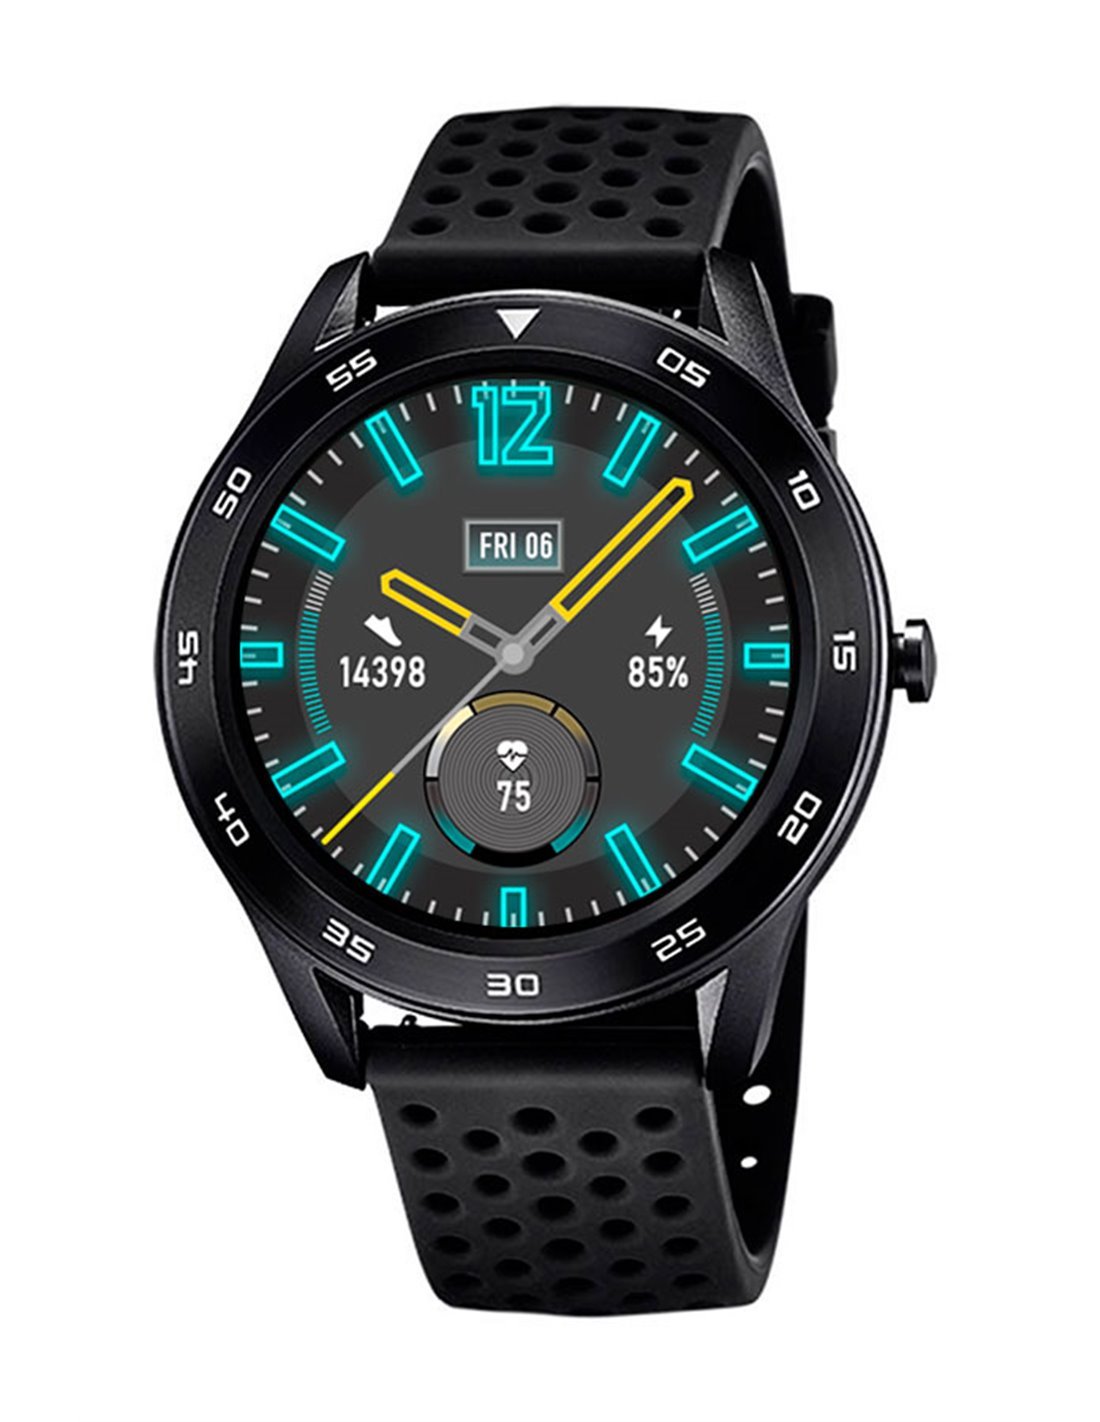 Reloj Lotus hombre Smartime Android-IOS - PRECIOS BARATOS. Comprar